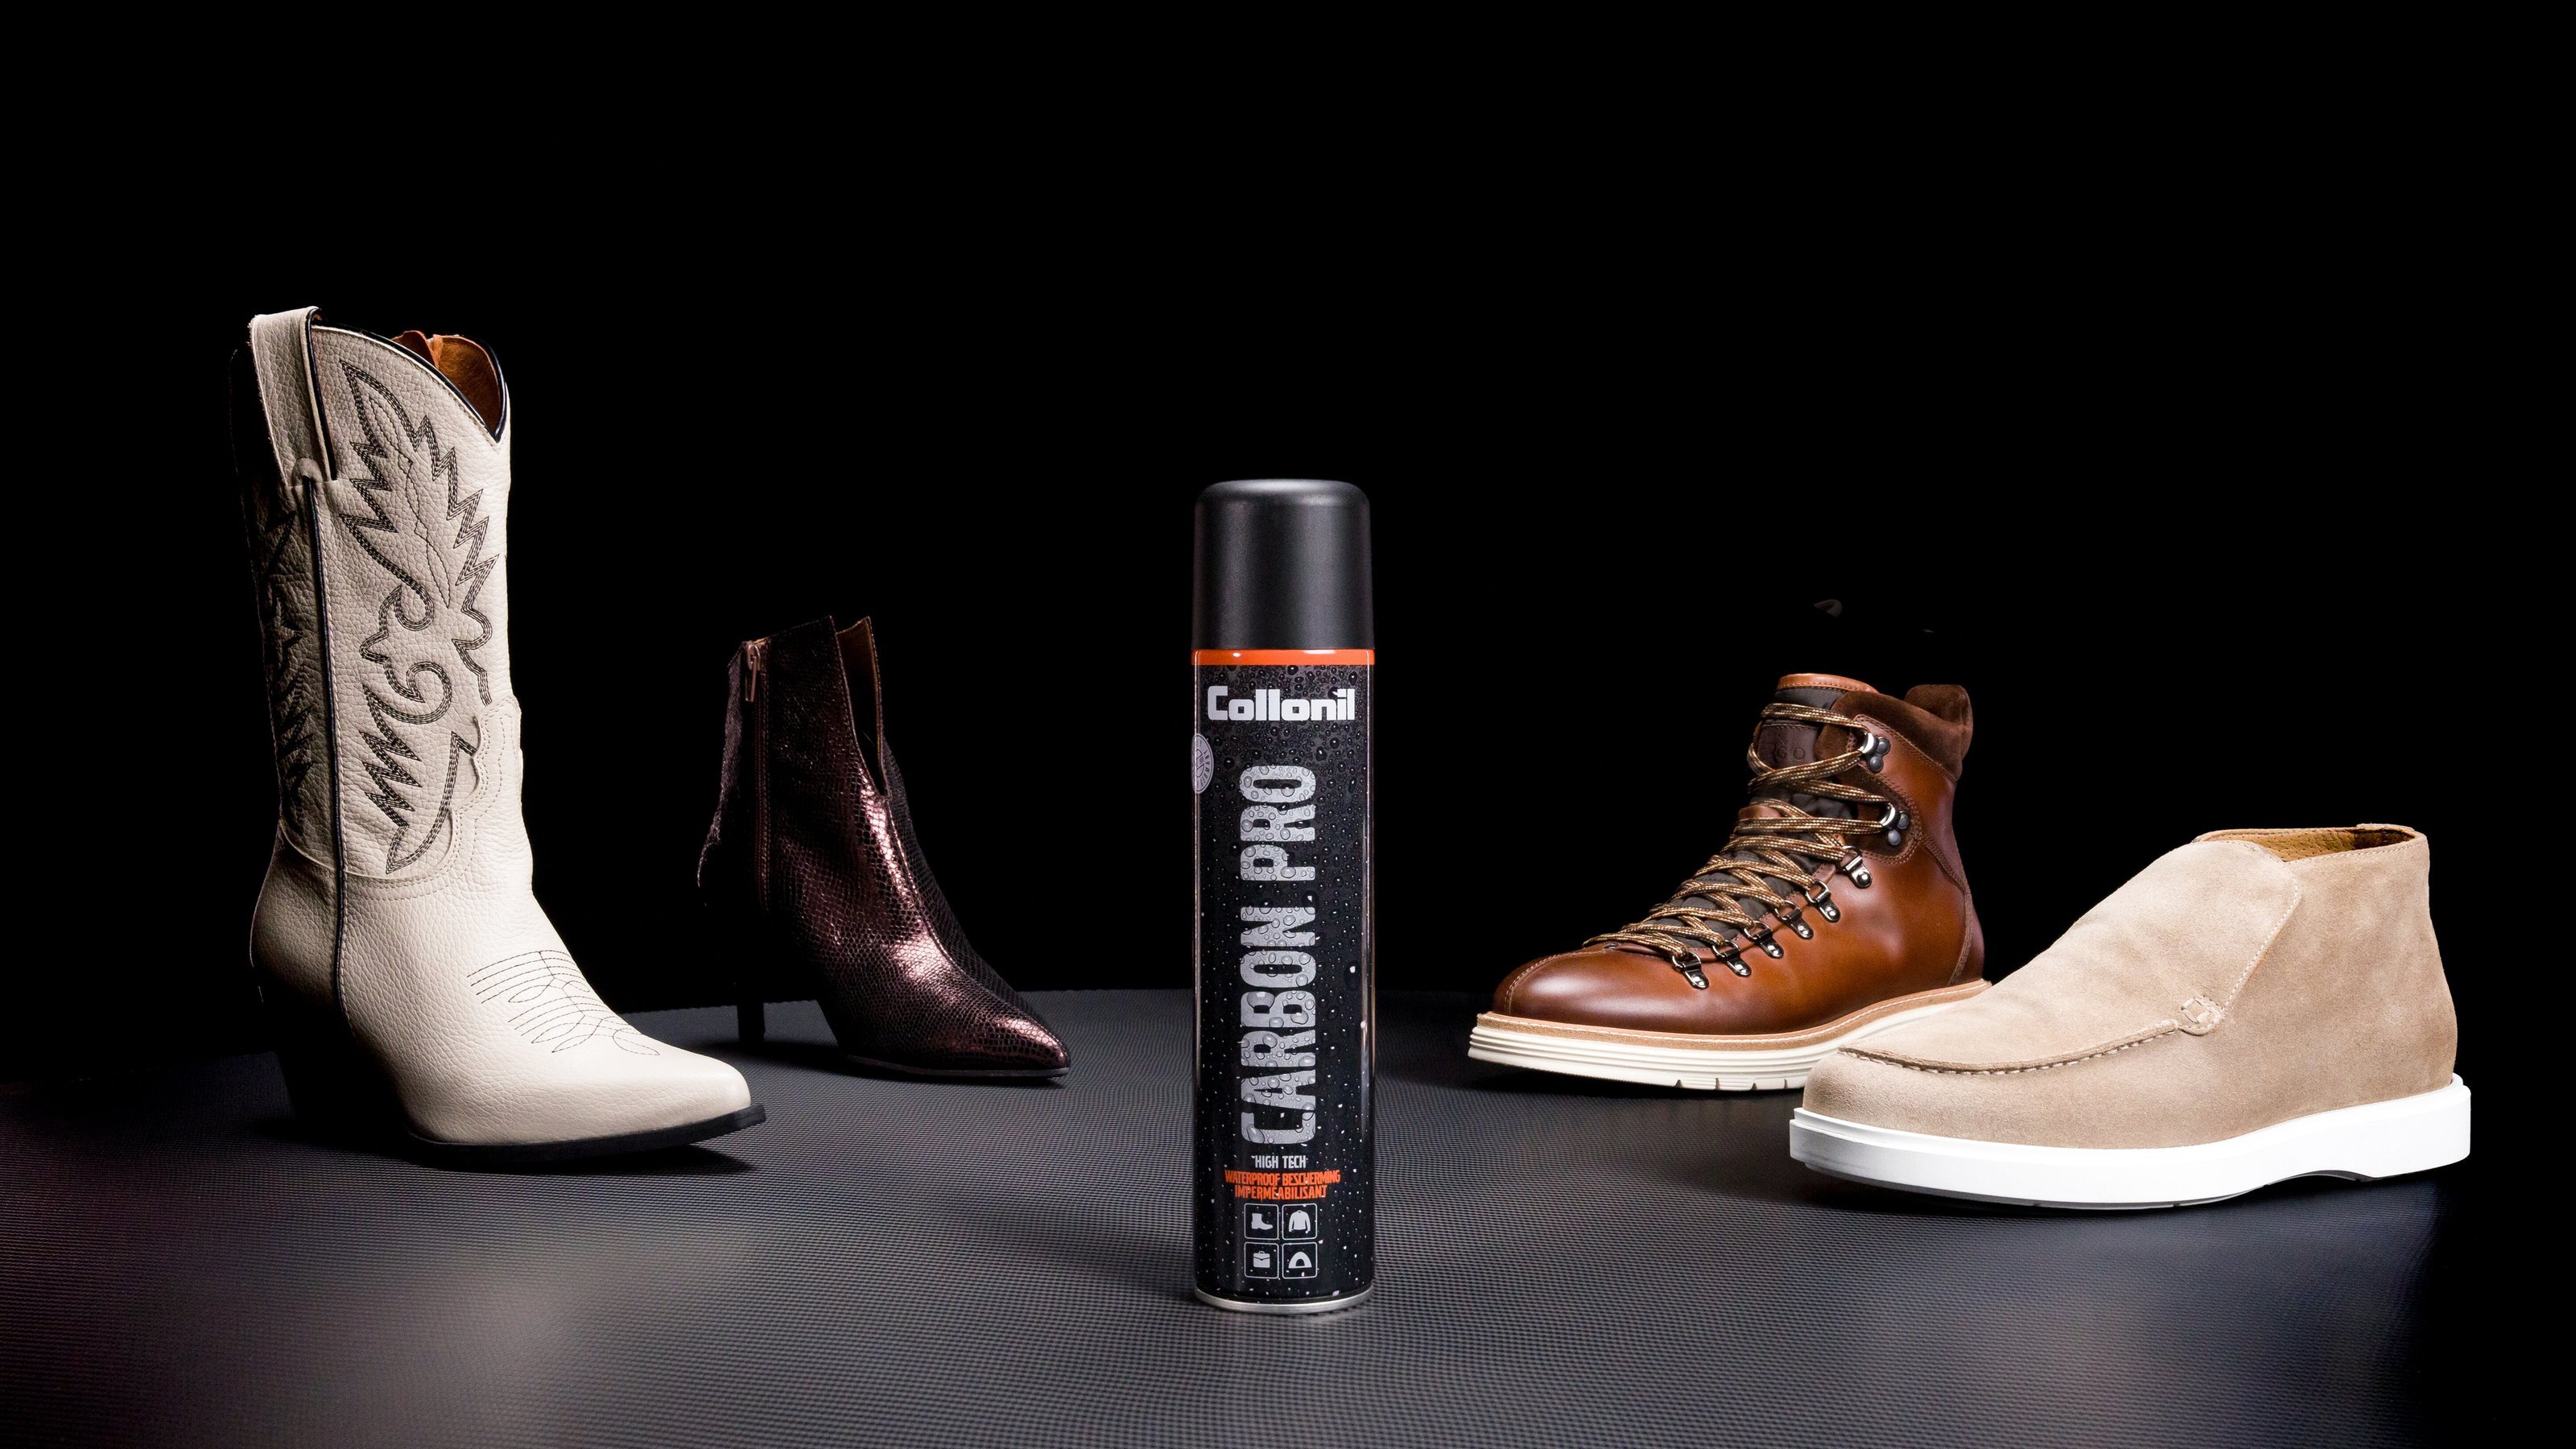 Vernieuwde Collonil Carbon Pro +33% campagne in samenwerking met premium schoenenmerken 